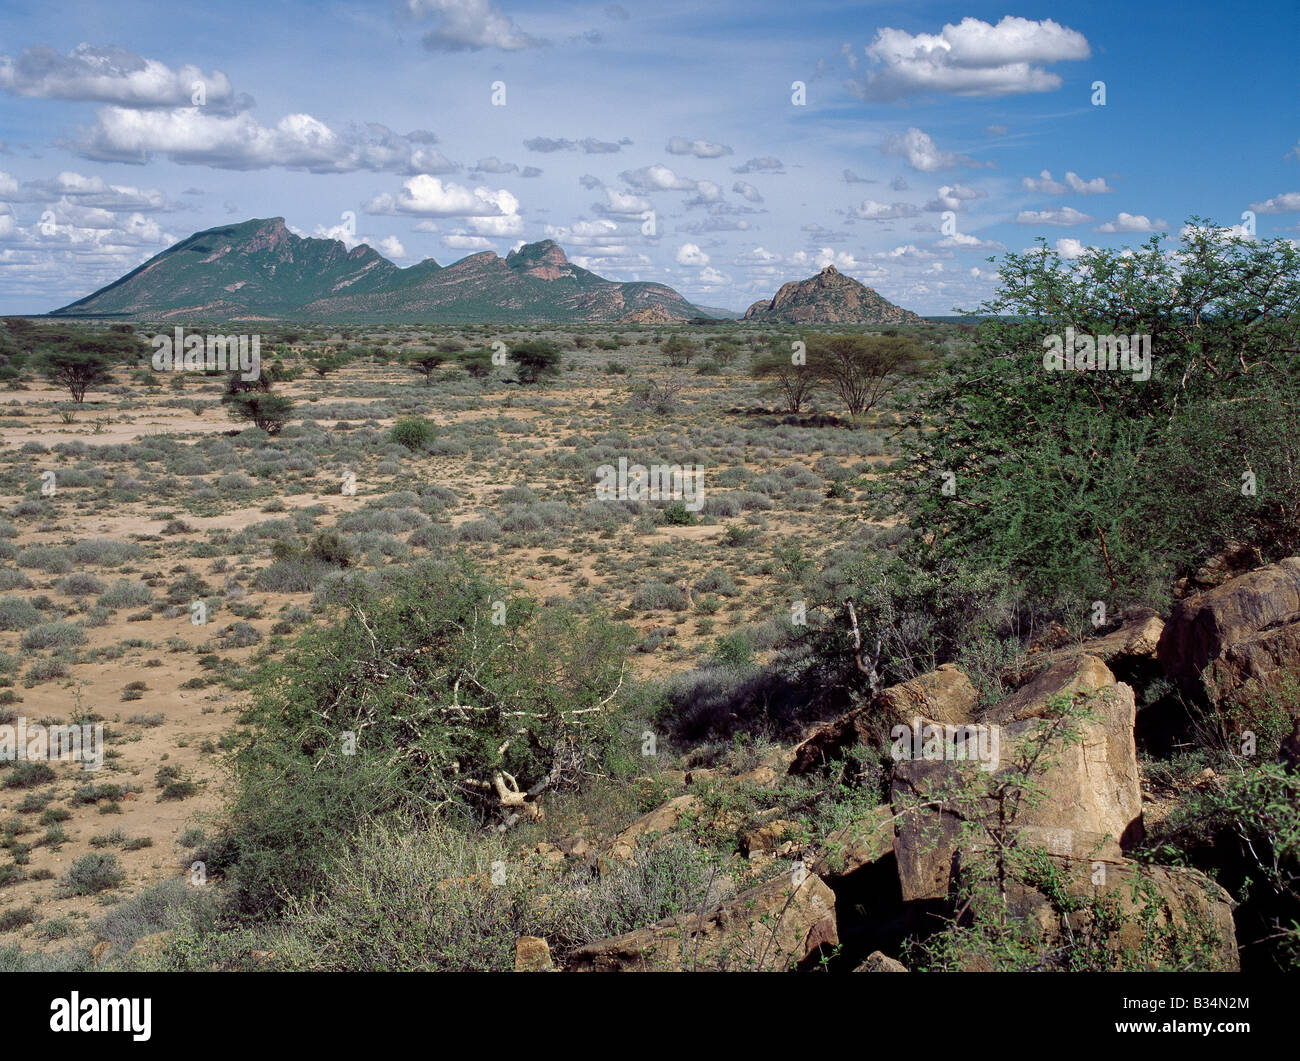 Kenya, distretto di Marsabit, Ngurunit. Semi-arido thorn scrub descrive meglio la vegetazione del nord Samburuland dove semi-pastori nomadi eke fuori una vita da un serissimo terra. La regione è caratterizzata da grand vistas, terreni poveri e una pioggia inaffidabile. La montagna nella distanza è Baio, che sorge ad un altezza di 5,746 piedi.Questa terra è condivisa dal bestiame-possedere Samburu (correlata al -maa parlando Maasai) e loro camel-possedere Rendille vicini. Le lingue, le dogane e le origini dei due popoli sono piuttosto differenti. Foto Stock